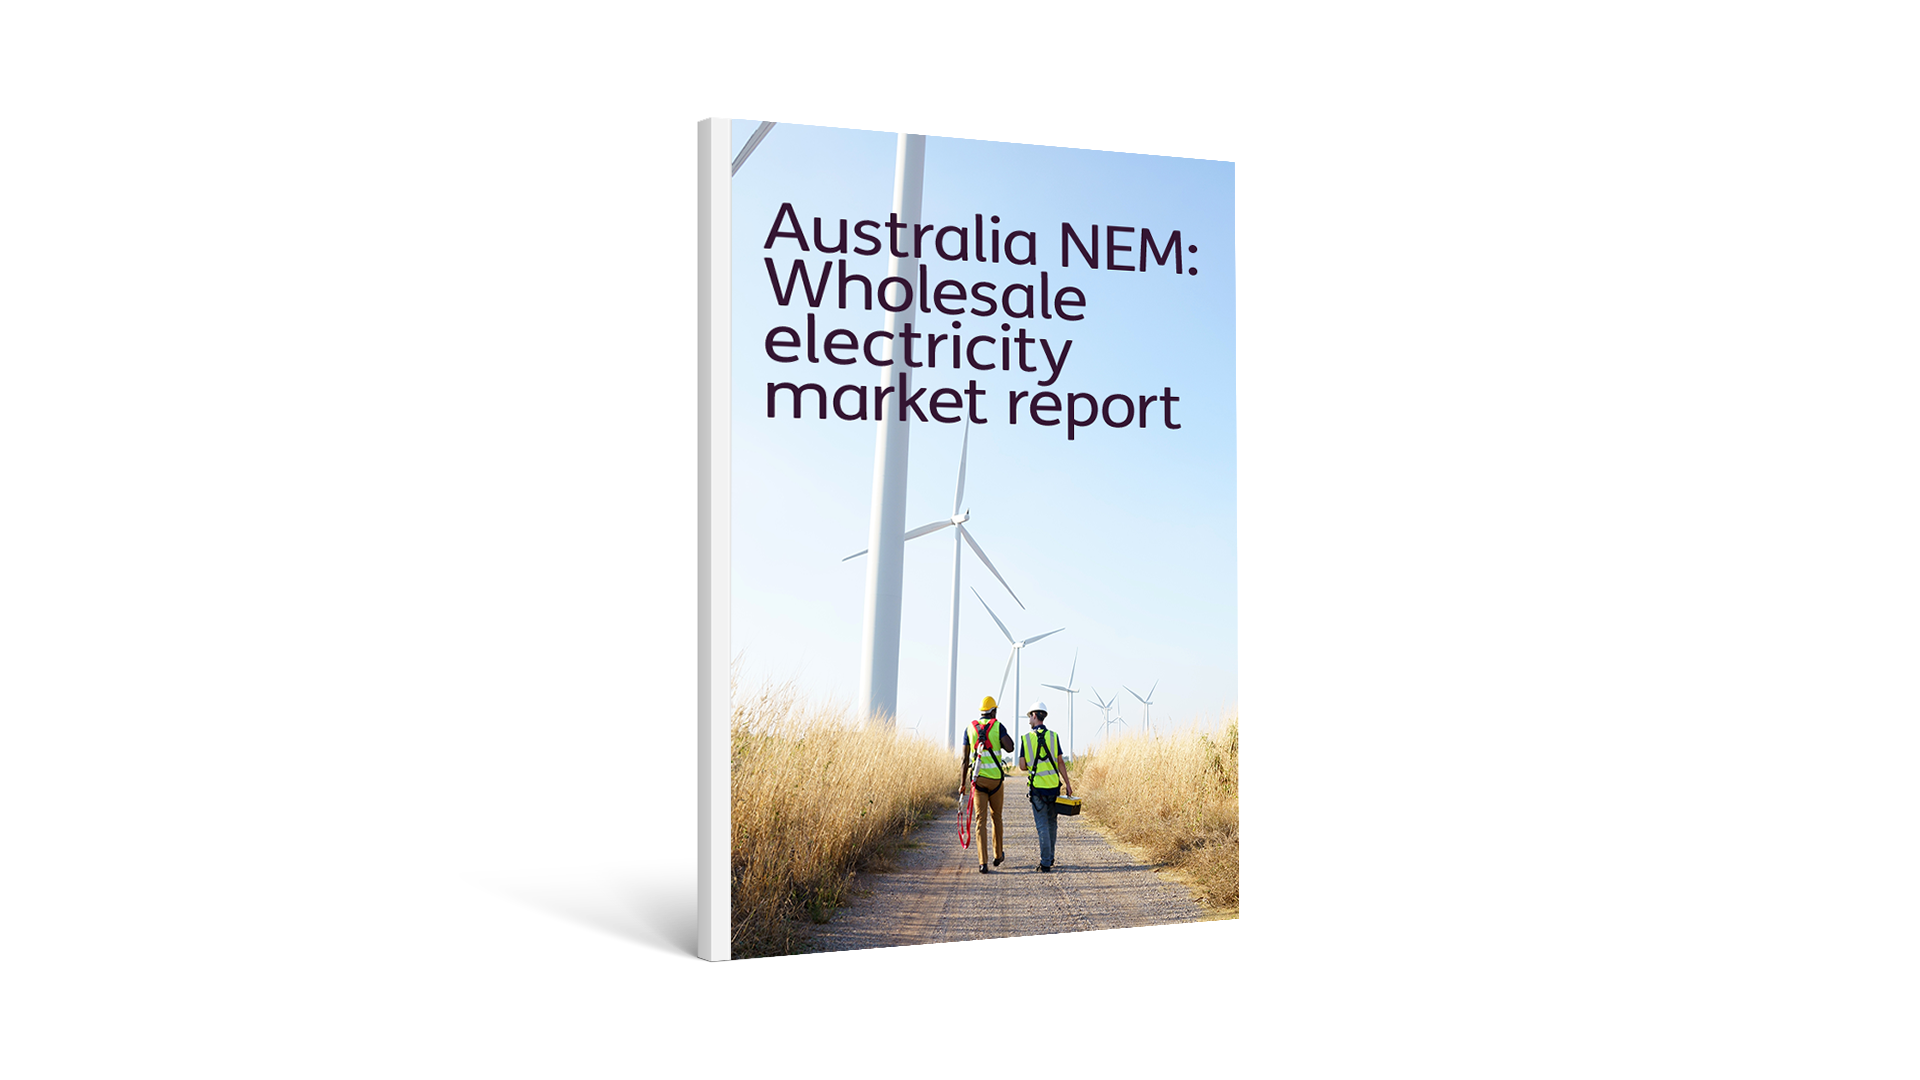 Australia NEM: Wholesale electricity market report